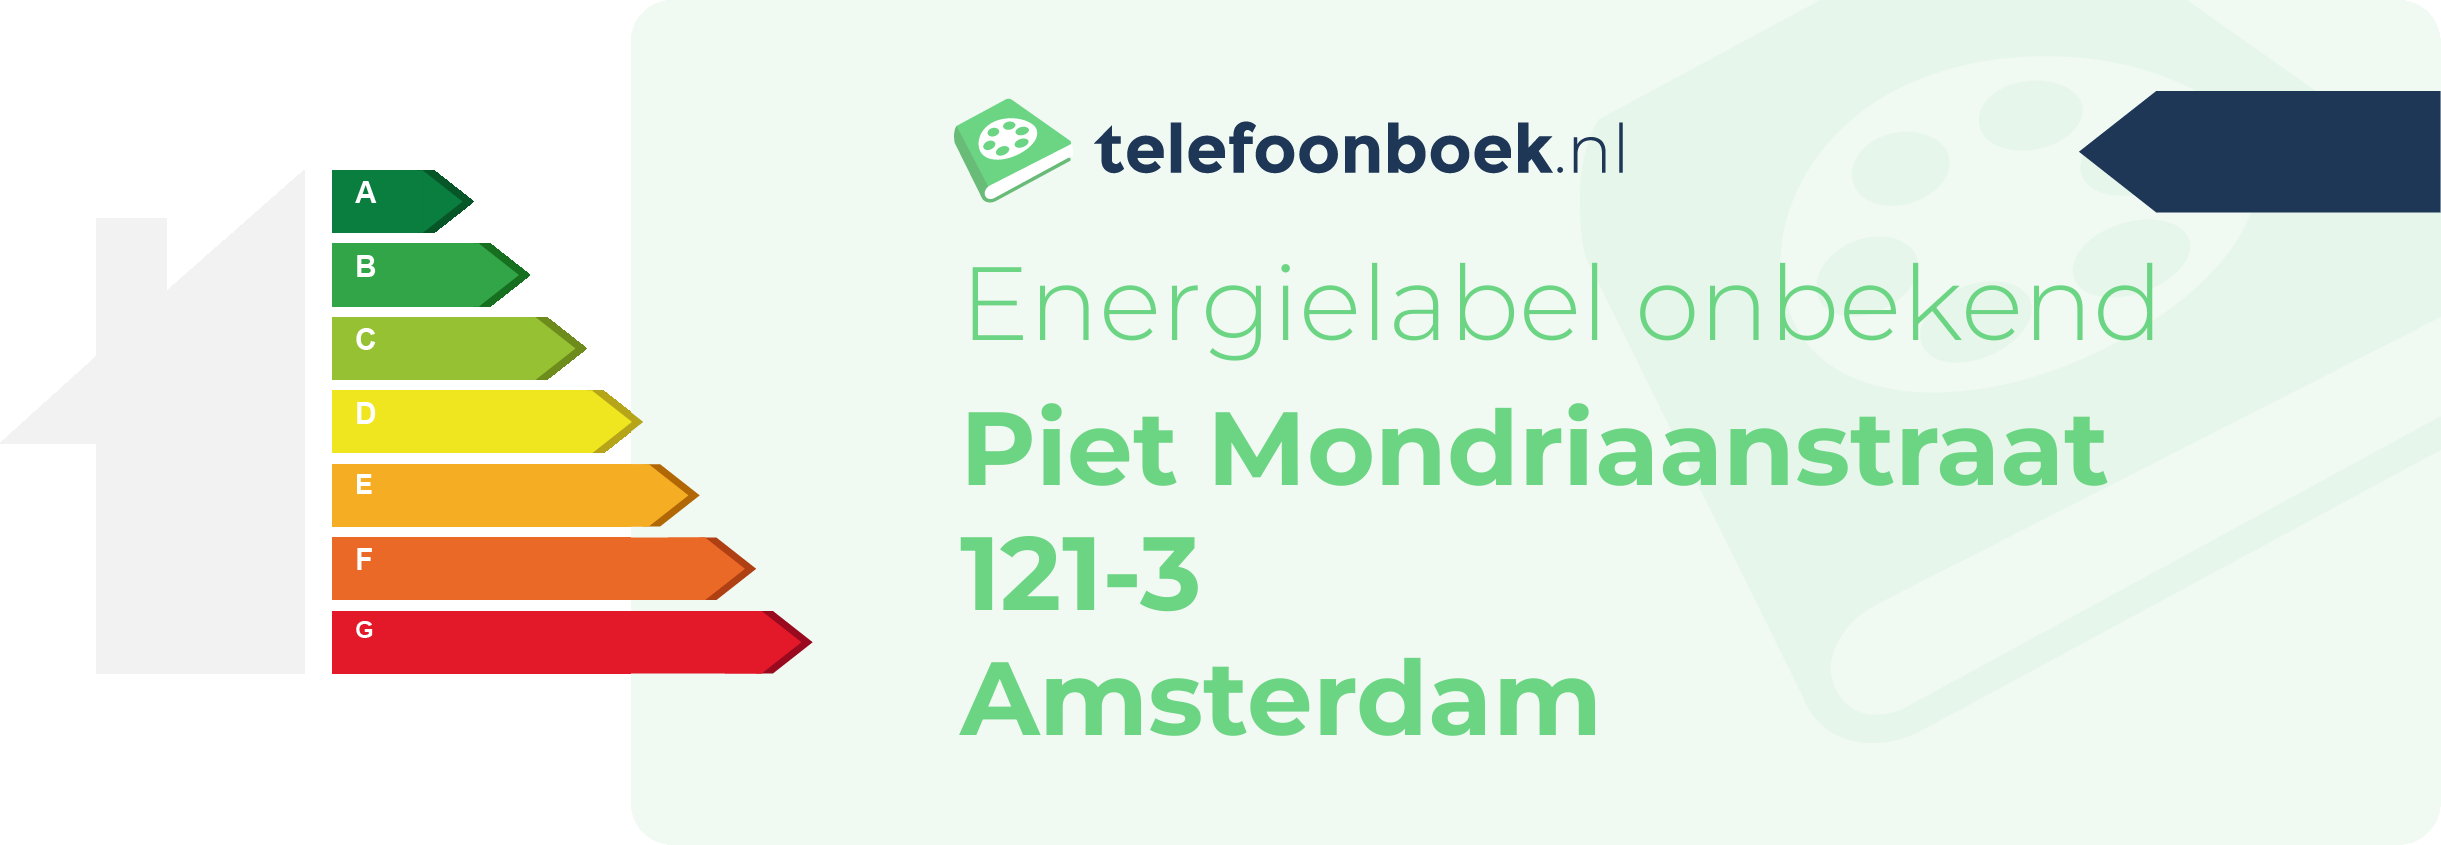 Energielabel Piet Mondriaanstraat 121-3 Amsterdam